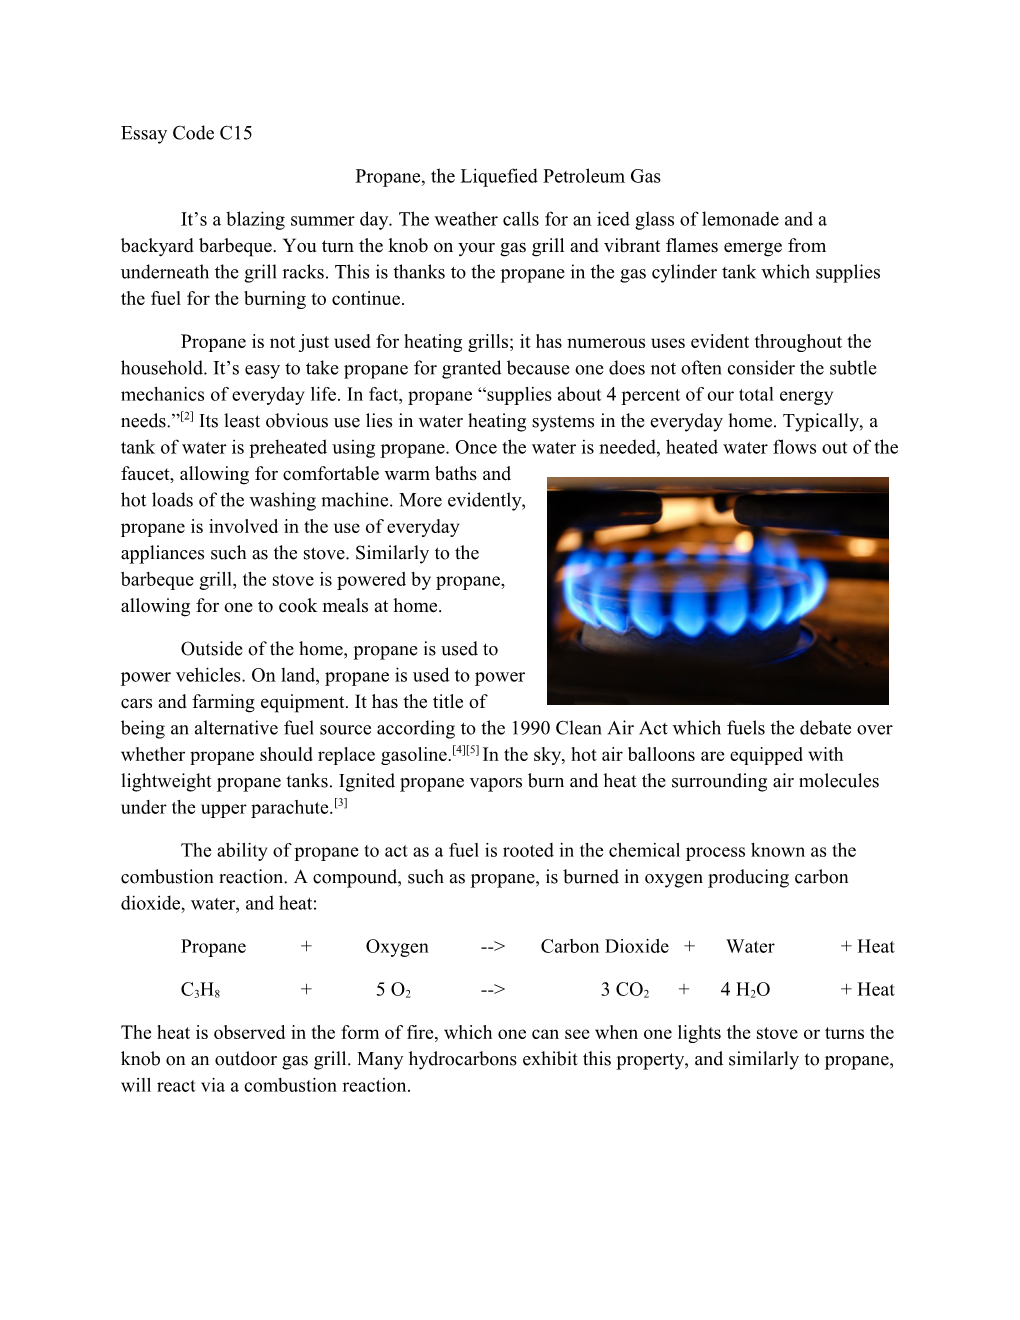 Propane, the Liquefied Petroleum Gas